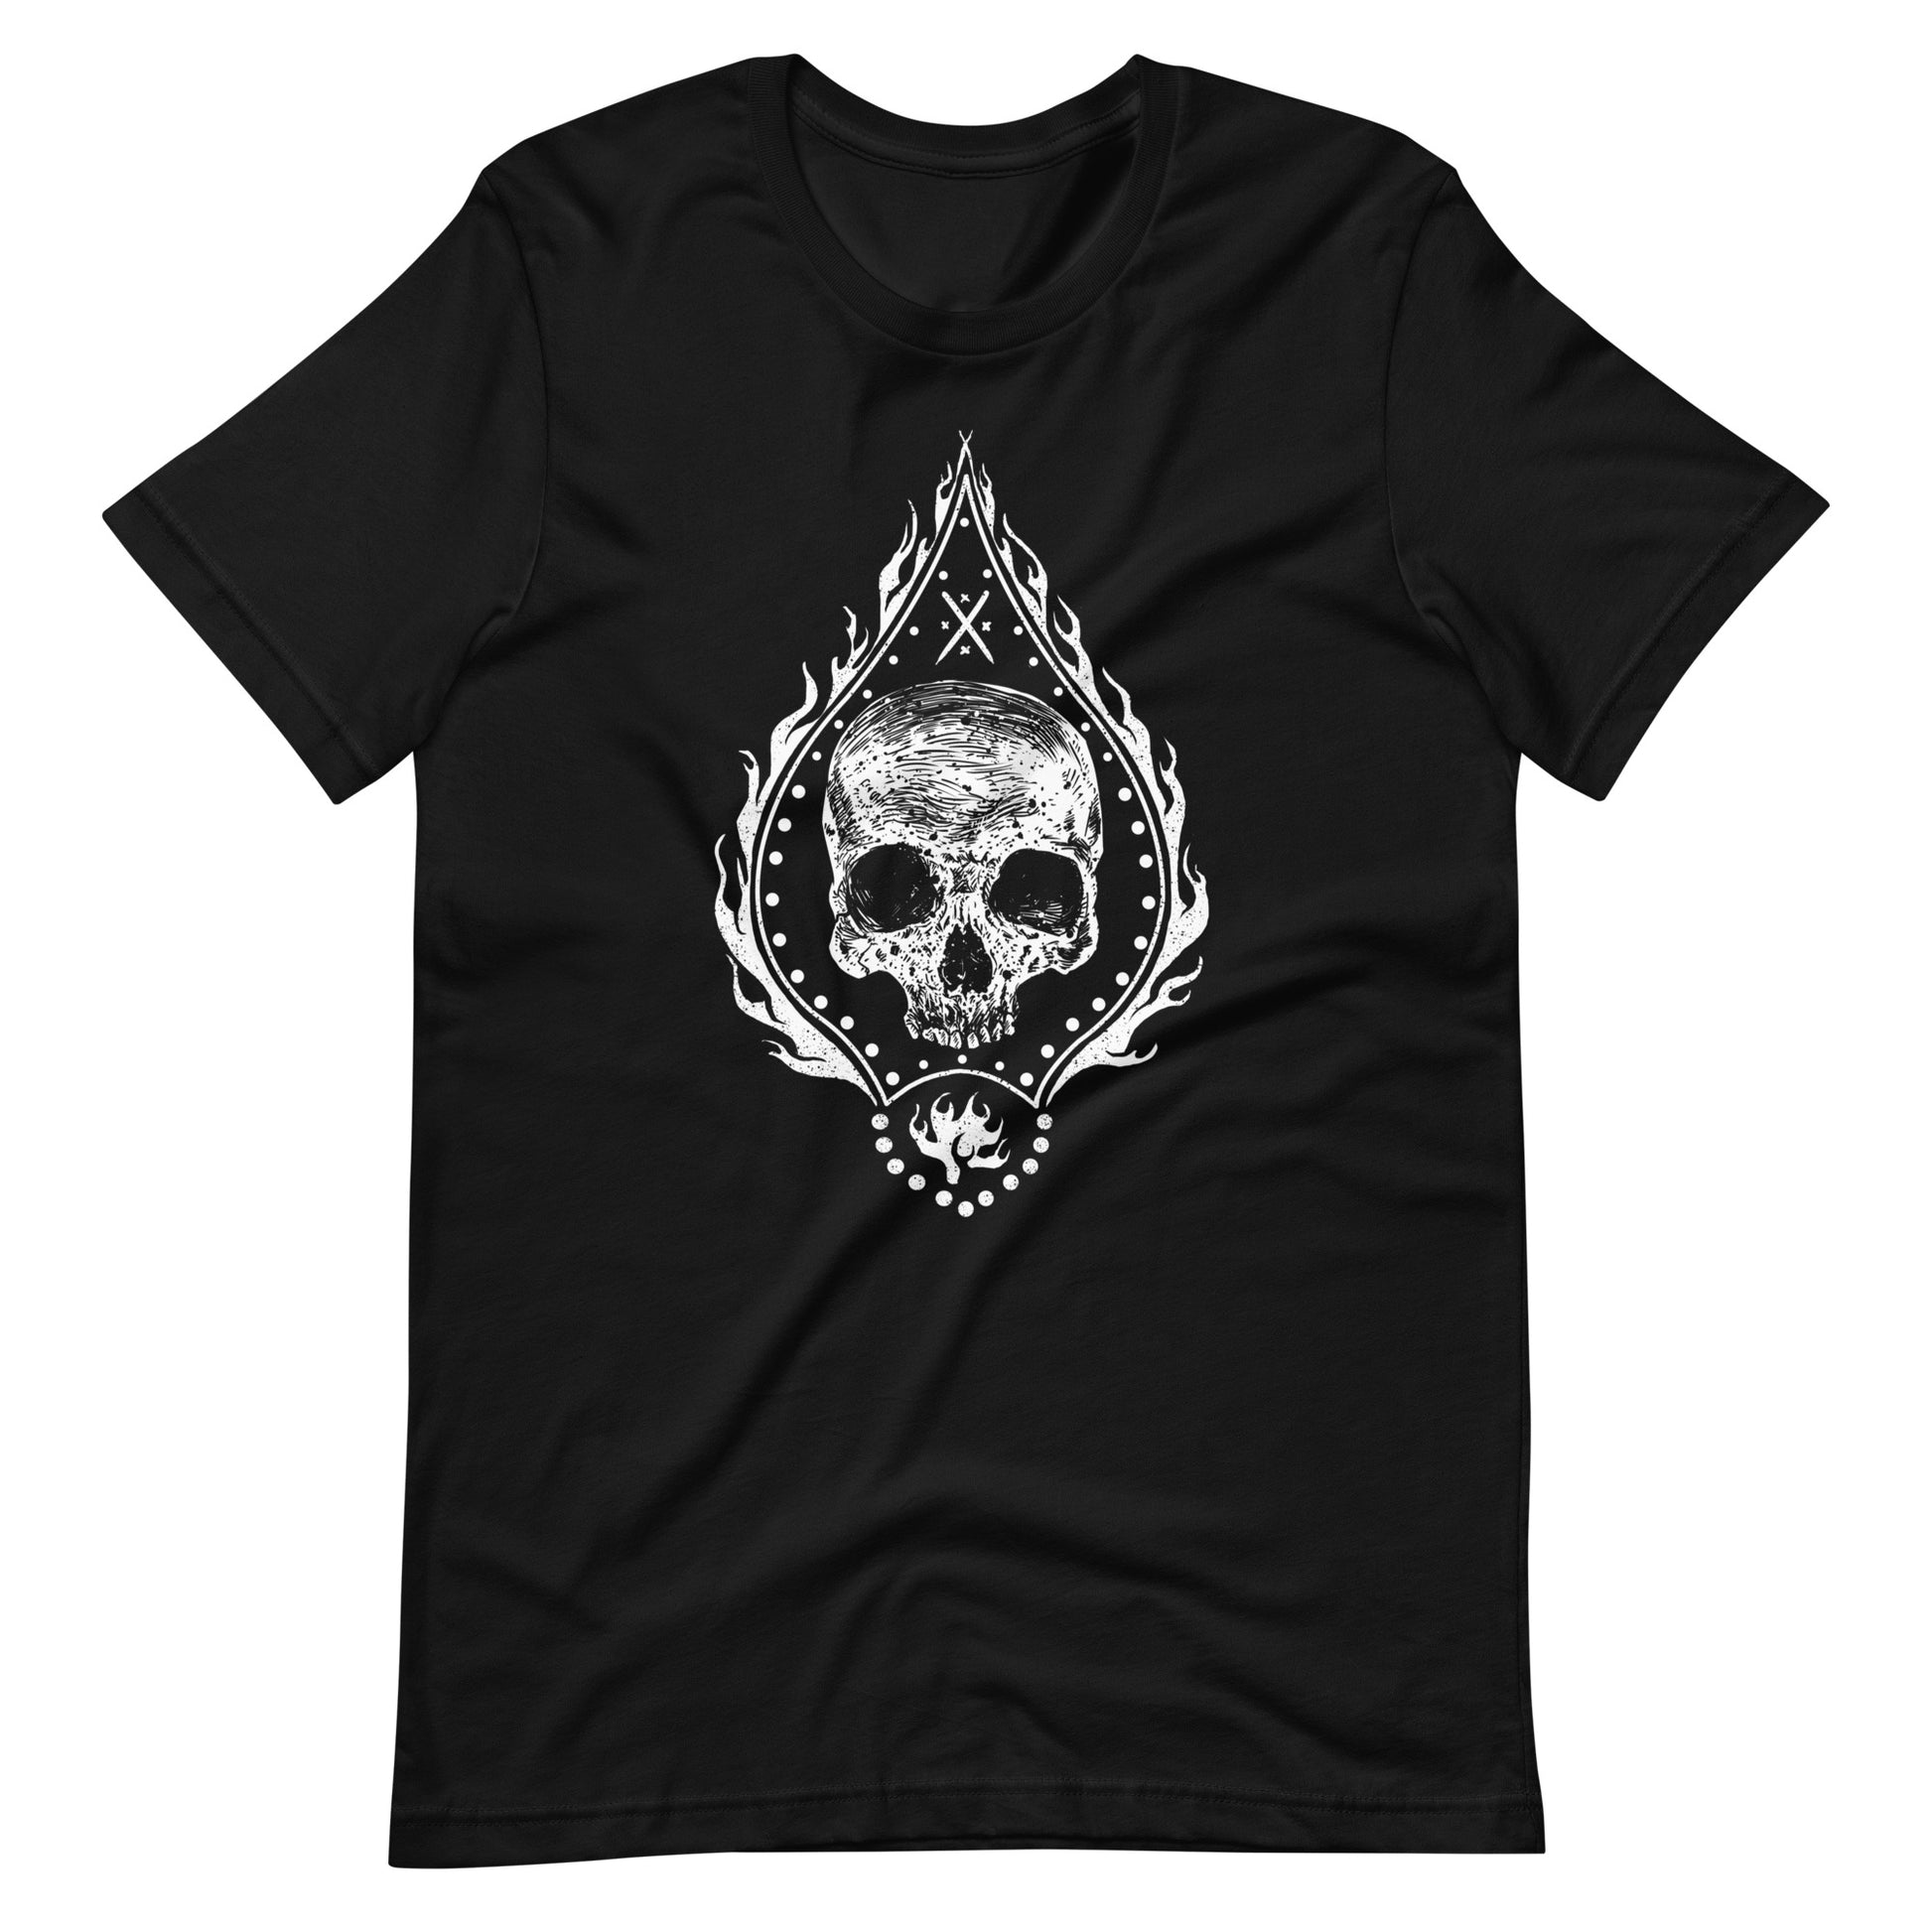 Fire Skull White - Men's t-shirt - Black Front